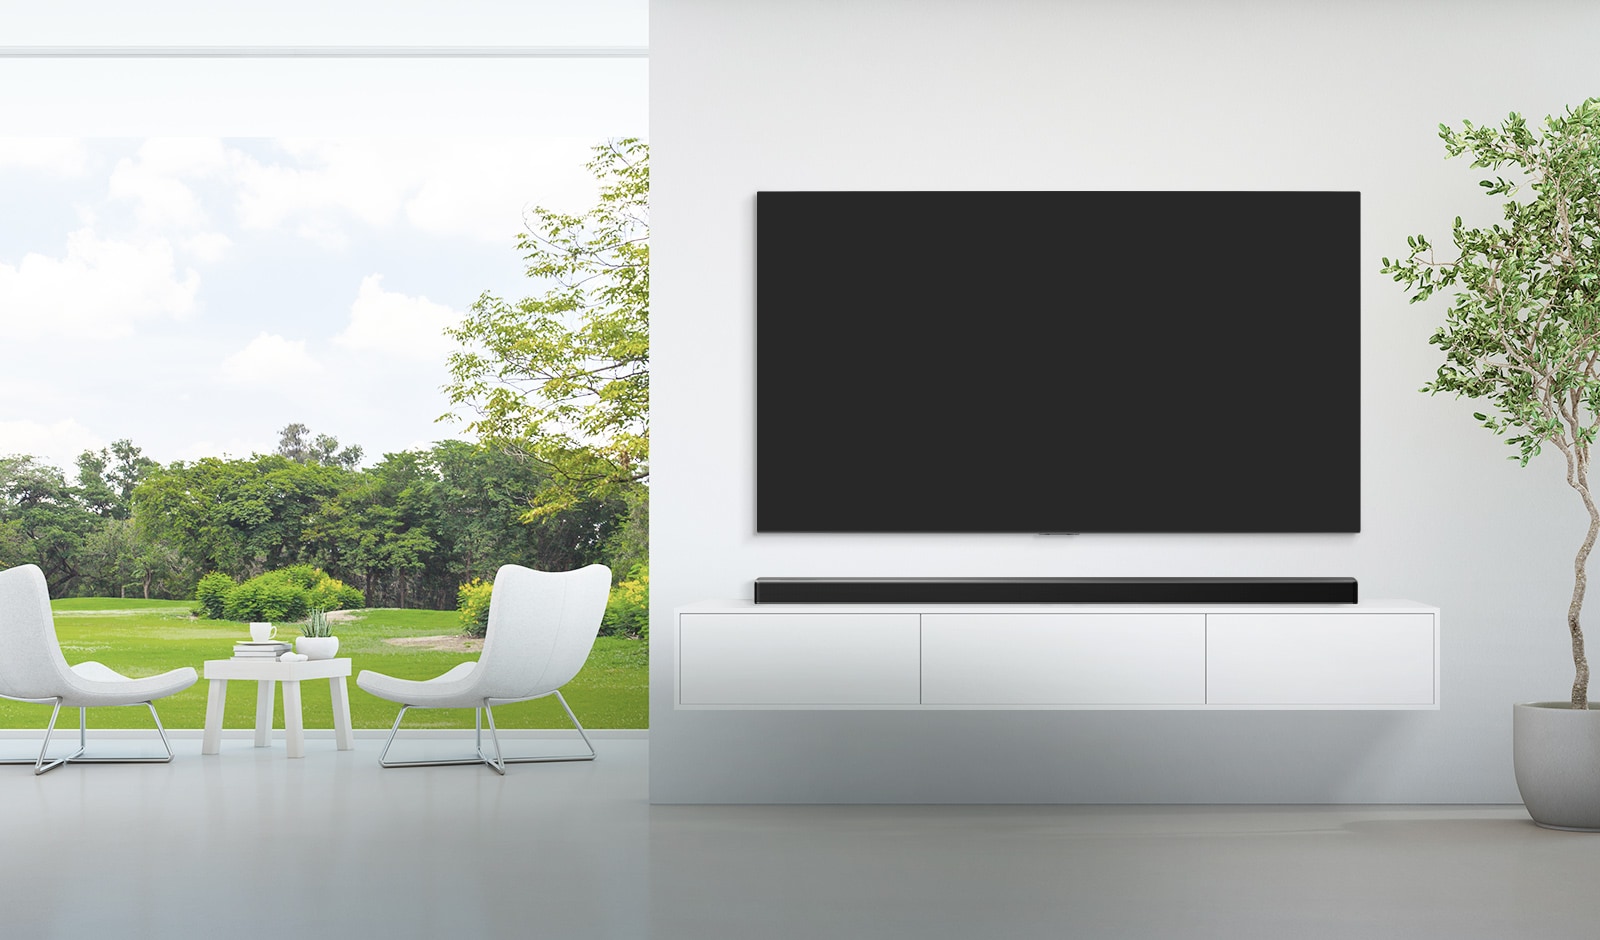 Một chiếc TV và một loa soundbar được đặt trong căn phòng khách rộng sơn trắng, và nhìn ra từ khung cửa sổ rộng là cảnh khu rừng xanh tươi bên ngoài. 